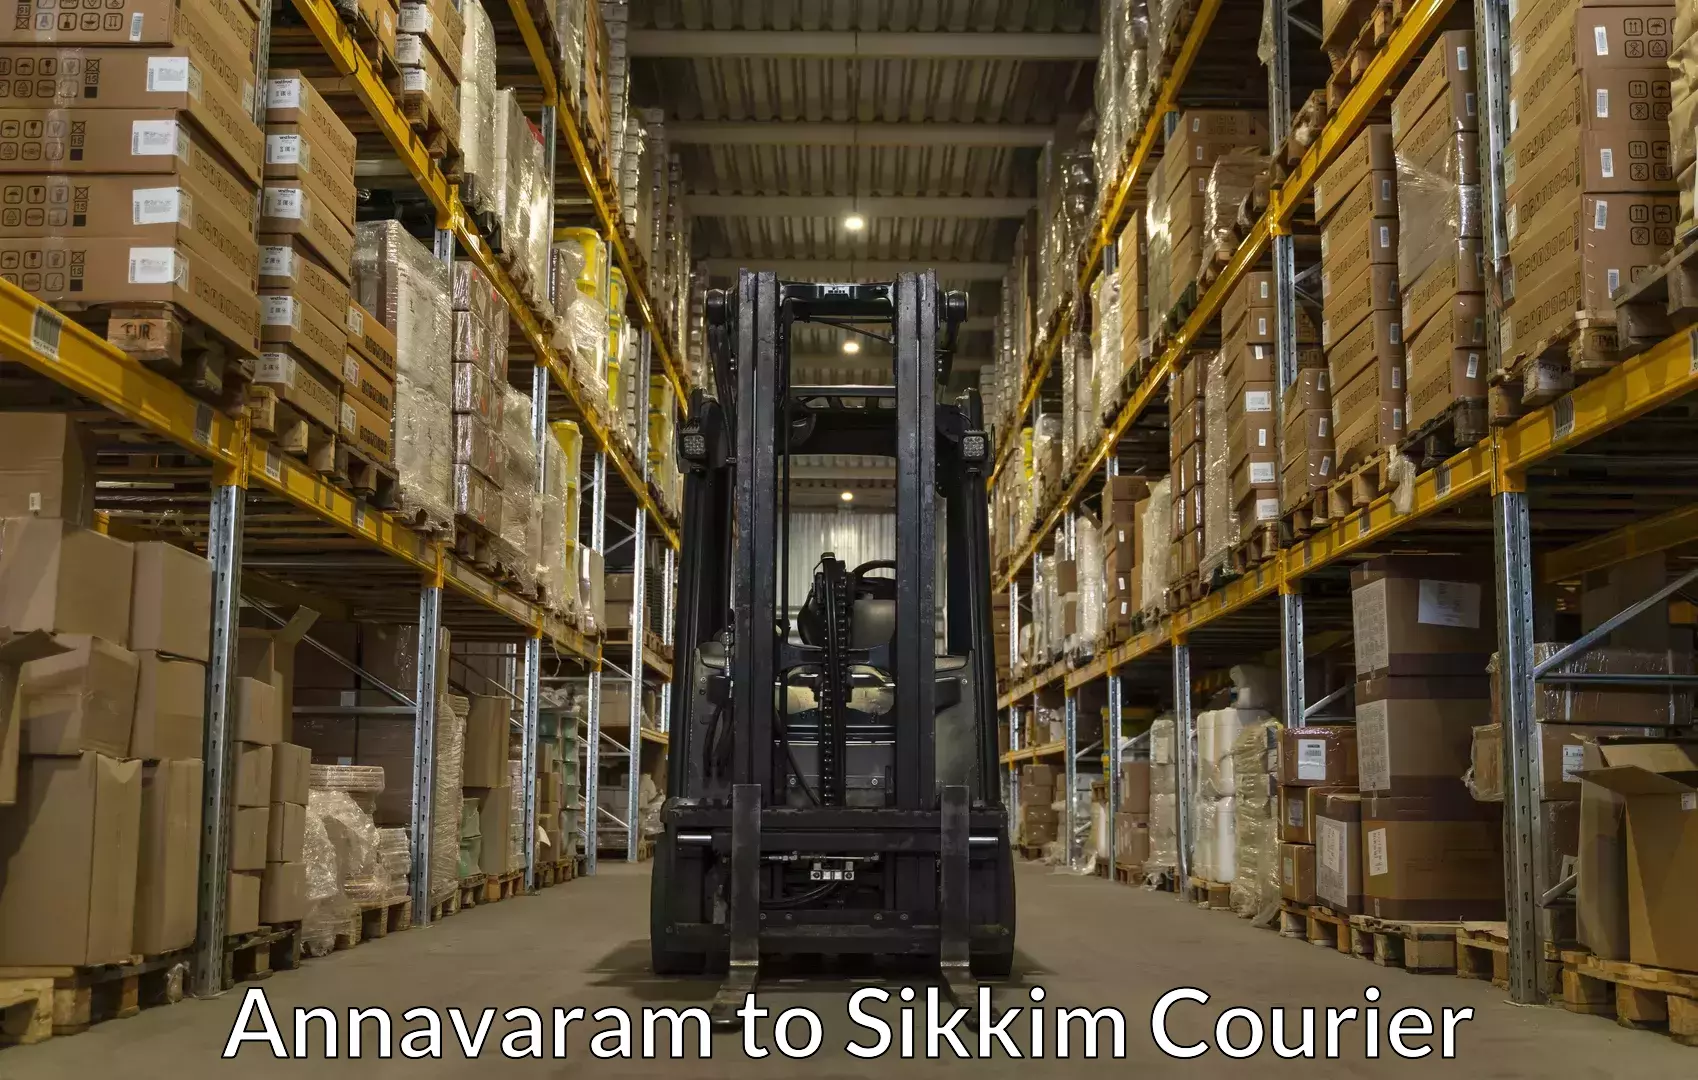 Professional furniture movers Annavaram to Ranipool